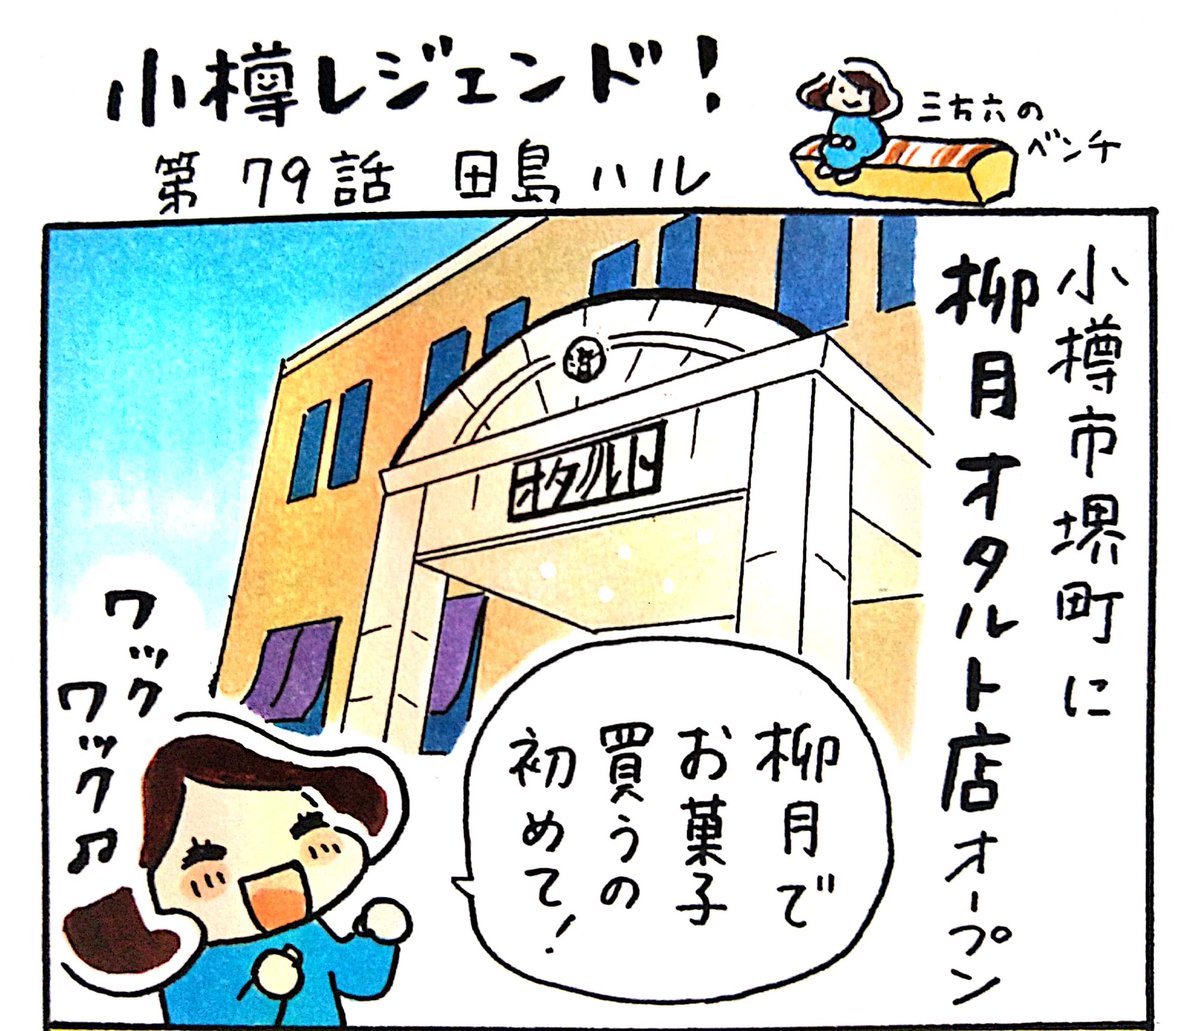 小樽のフリーペーパー「小樽チャンネルmagazine」6月号発行されました。漫画 #小樽レジェンド !79話載ってます。お菓子メーカー・柳月が小樽にオープン。その名も「柳月オタルト店」。オタルト店限定のお菓子もあれば、定番の品「三方六」の形のベンチにも座れます。#小樽 #北海道 